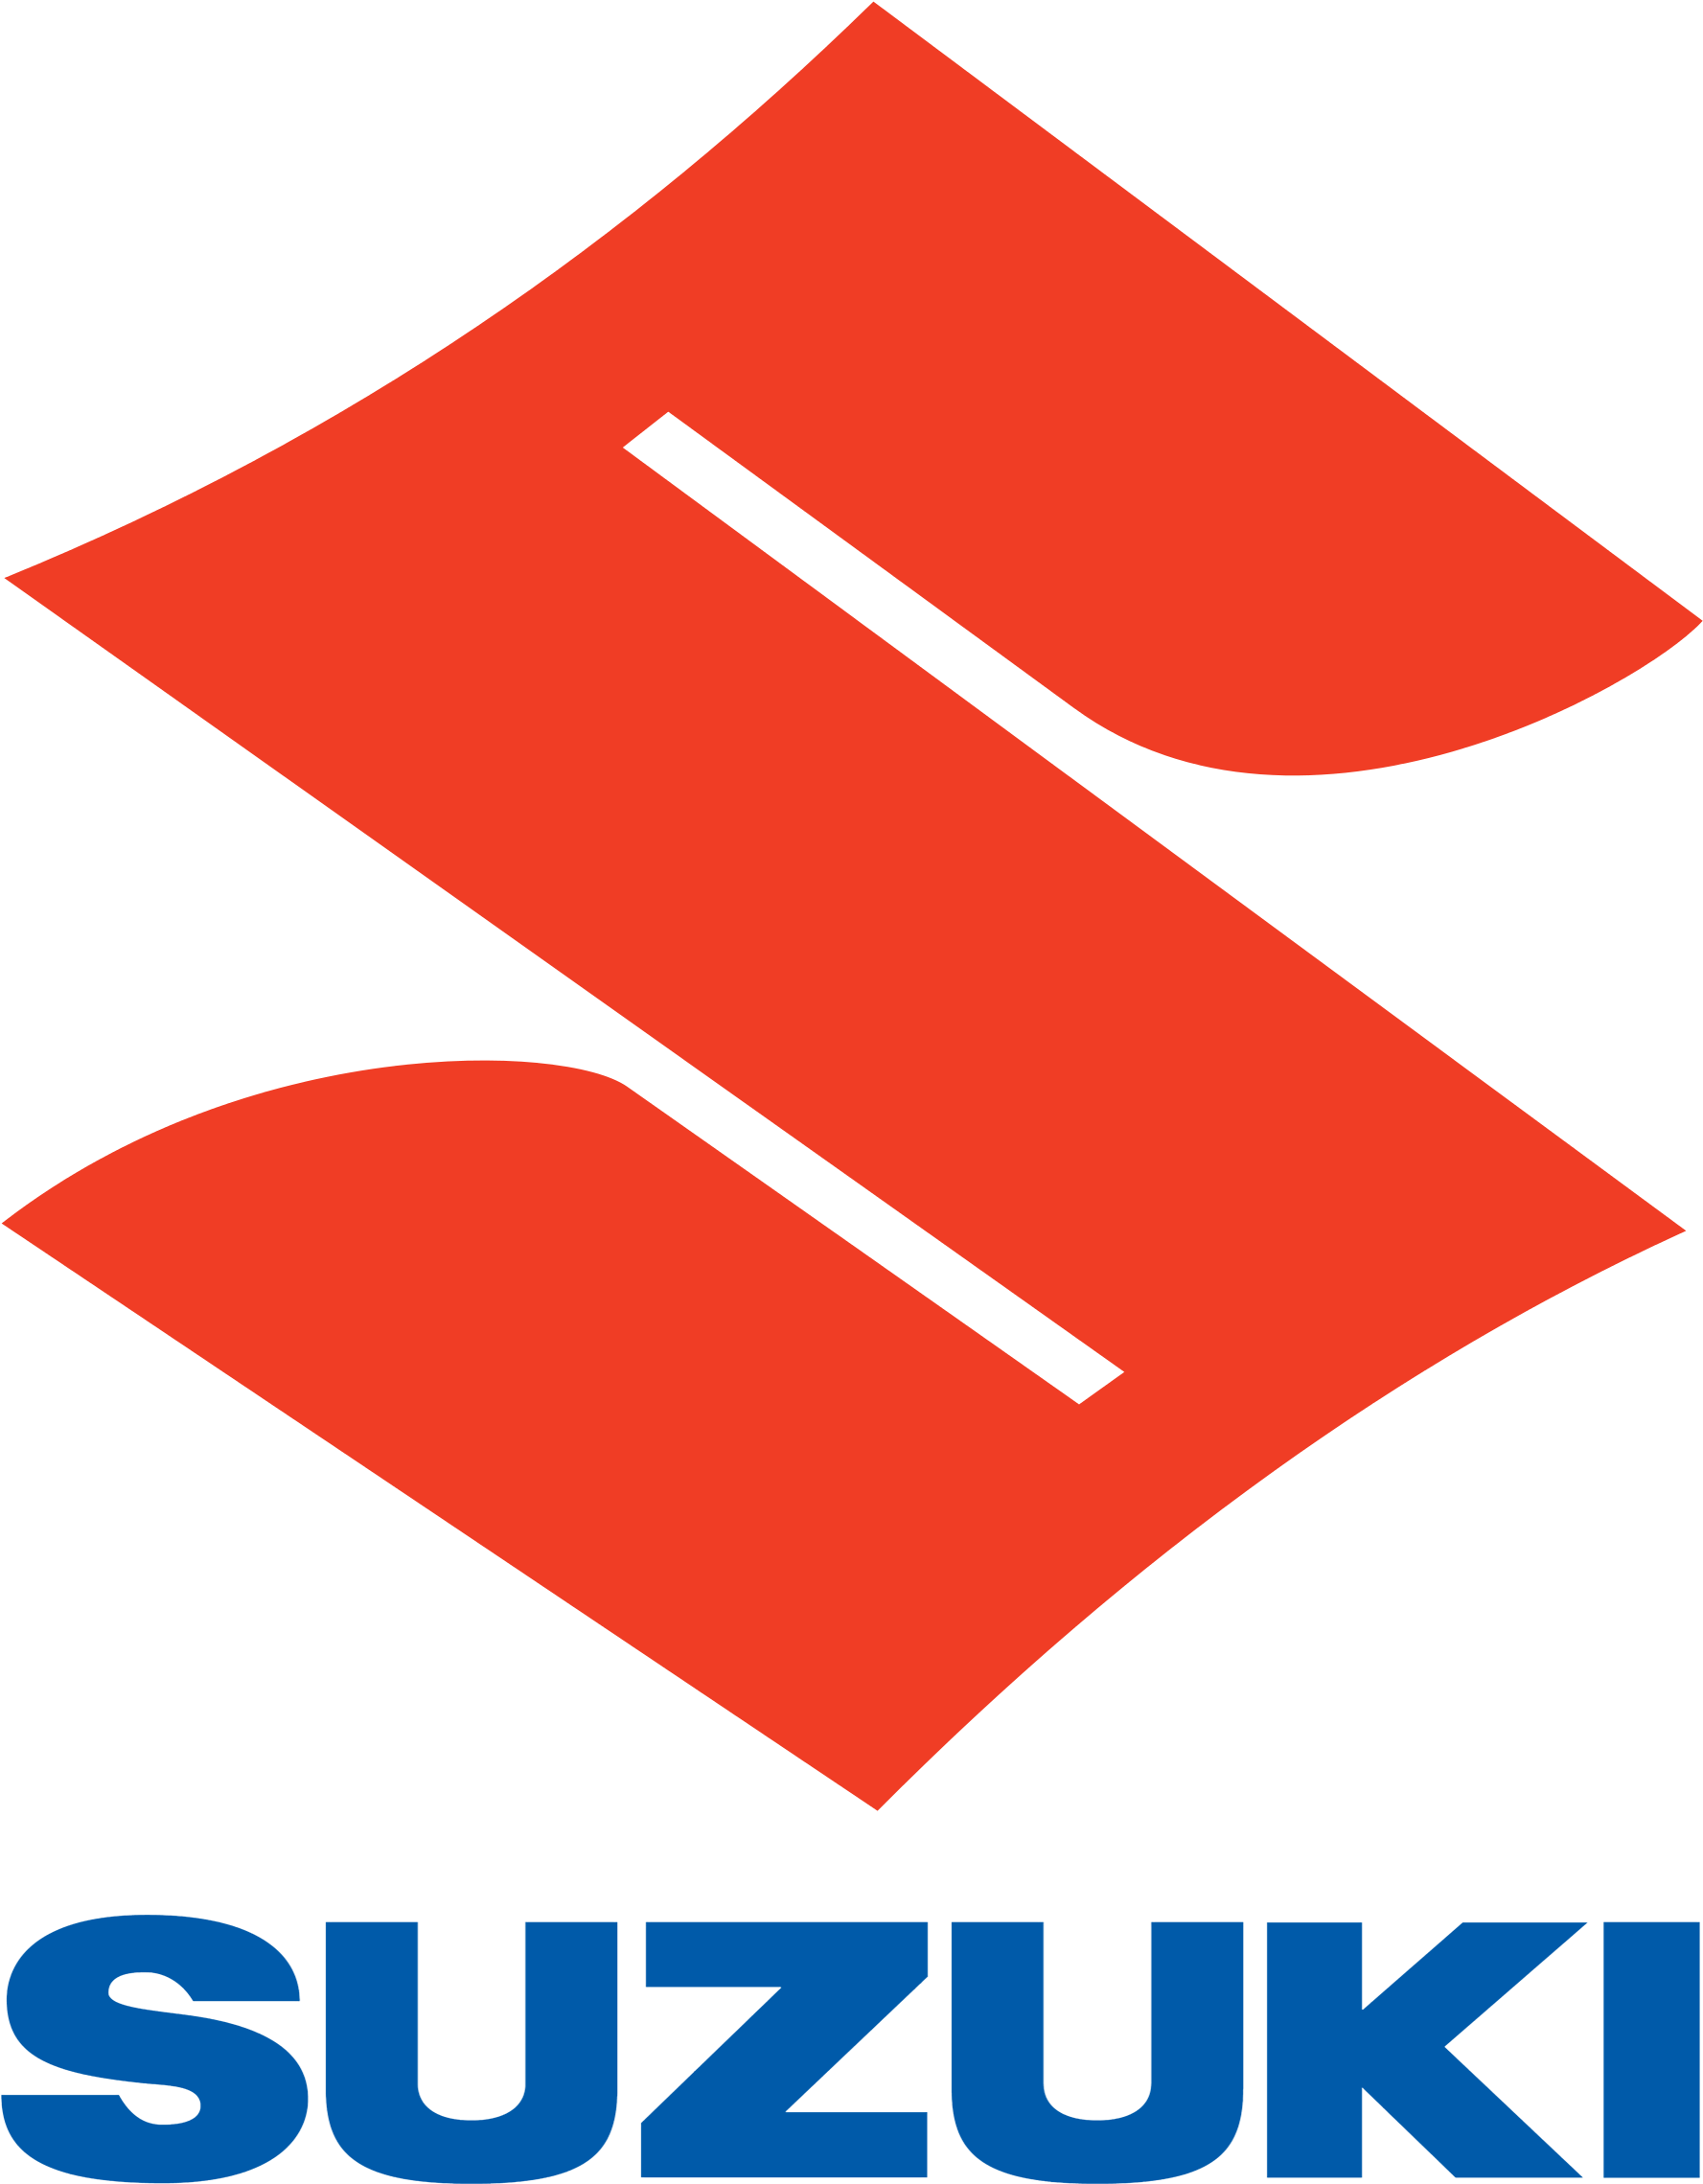 Suzuki Logo - Way Of Life Suzuki (2000x2456)